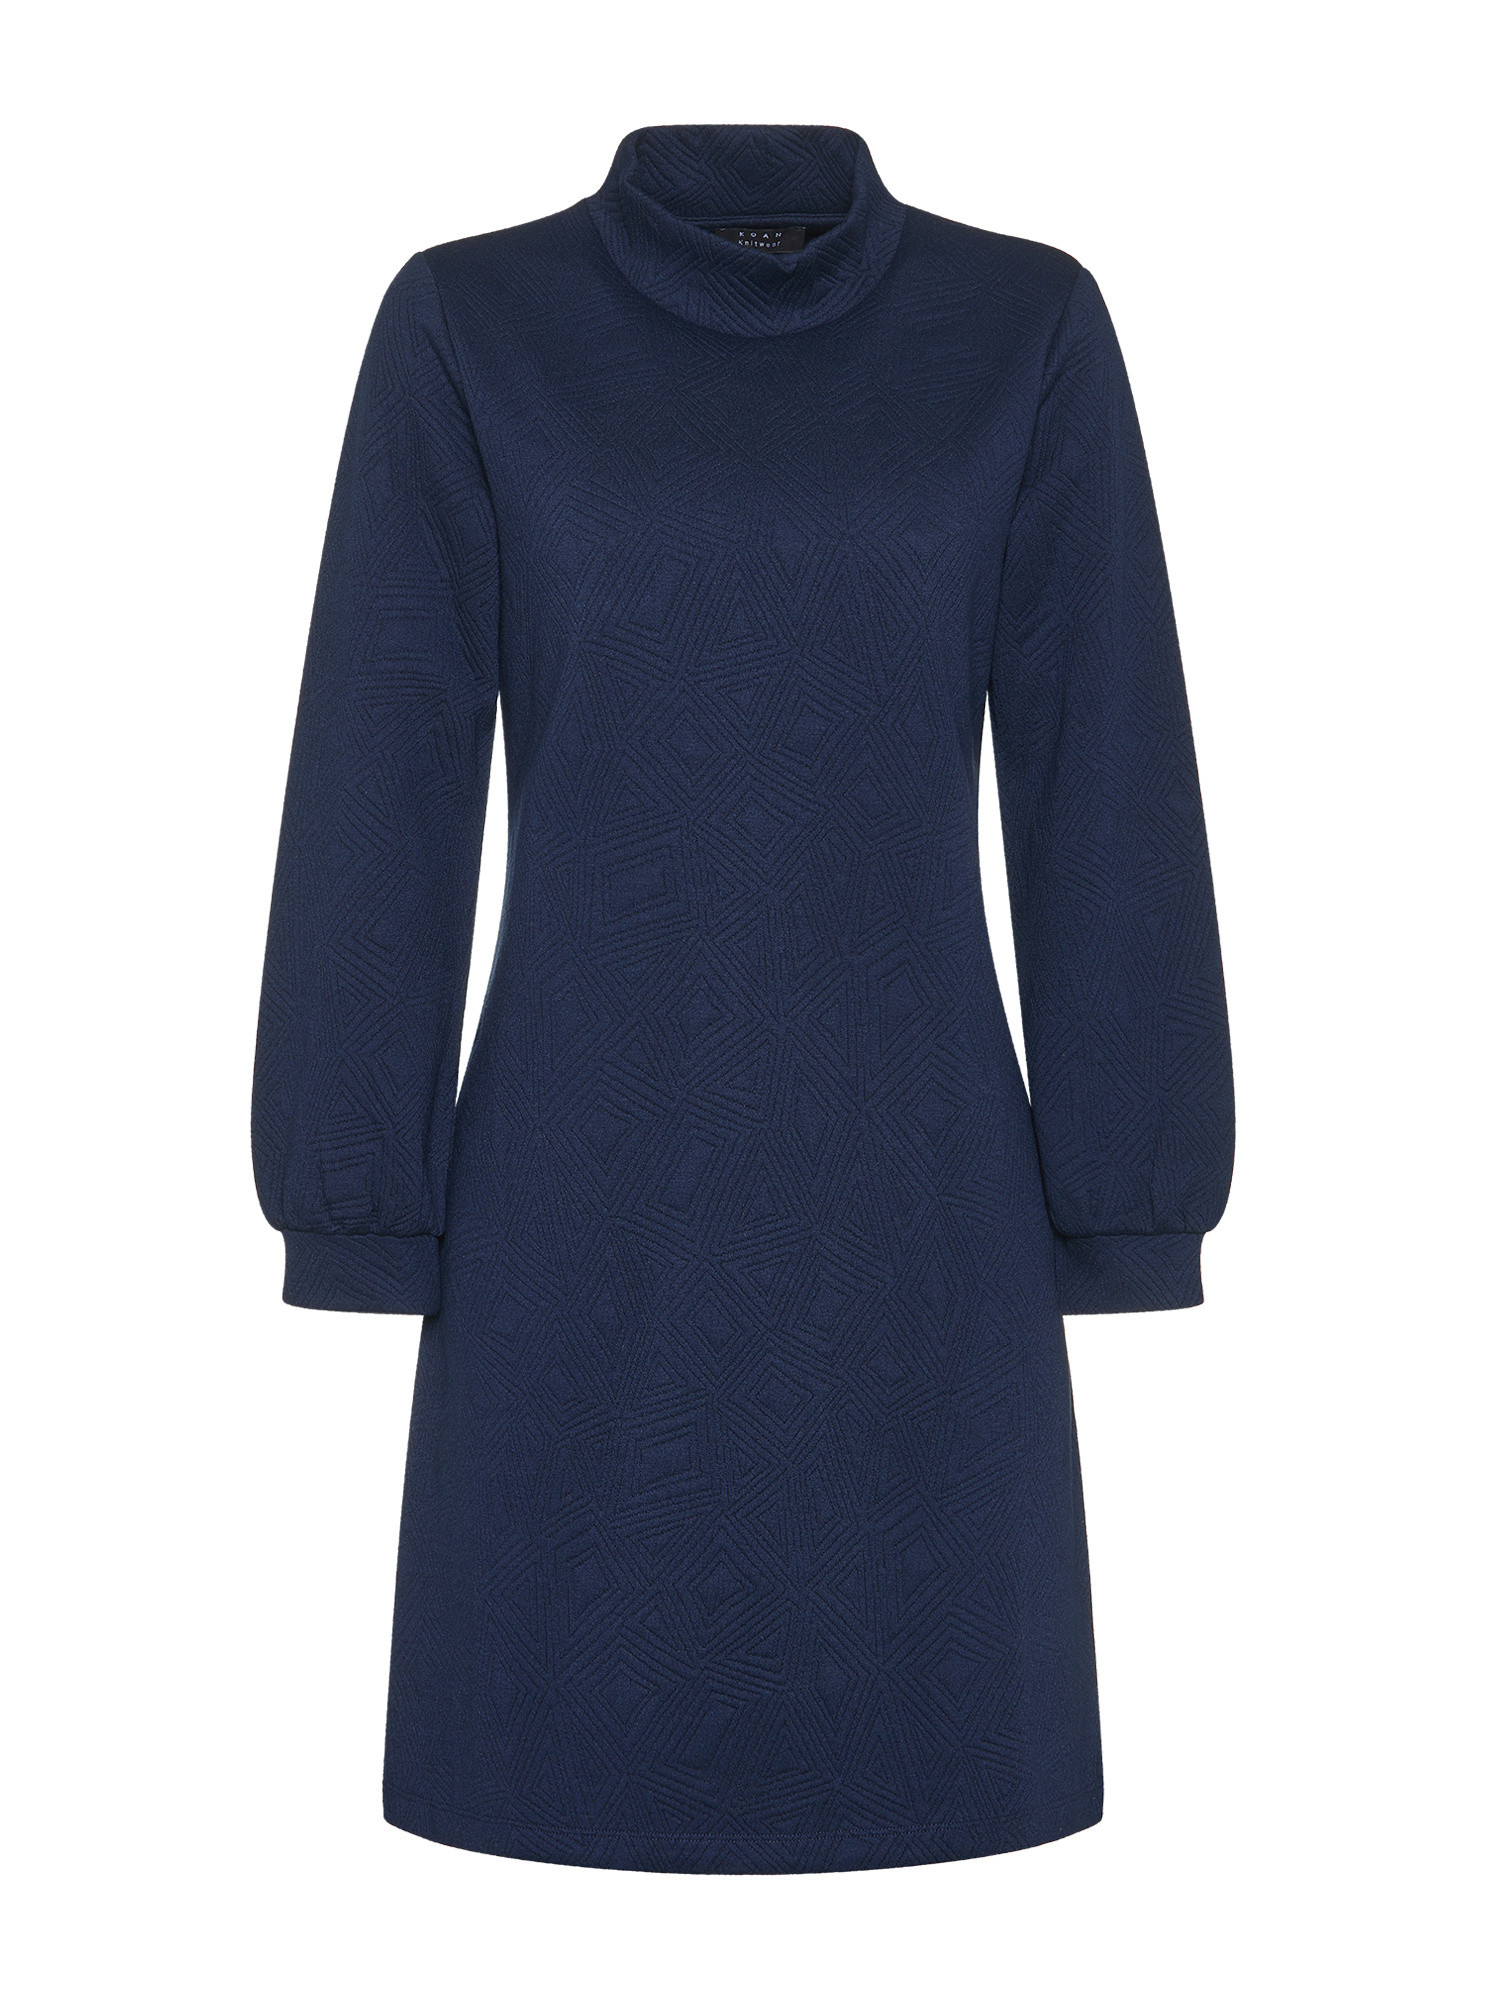 Koan - Flared dress, Blue, large image number 0